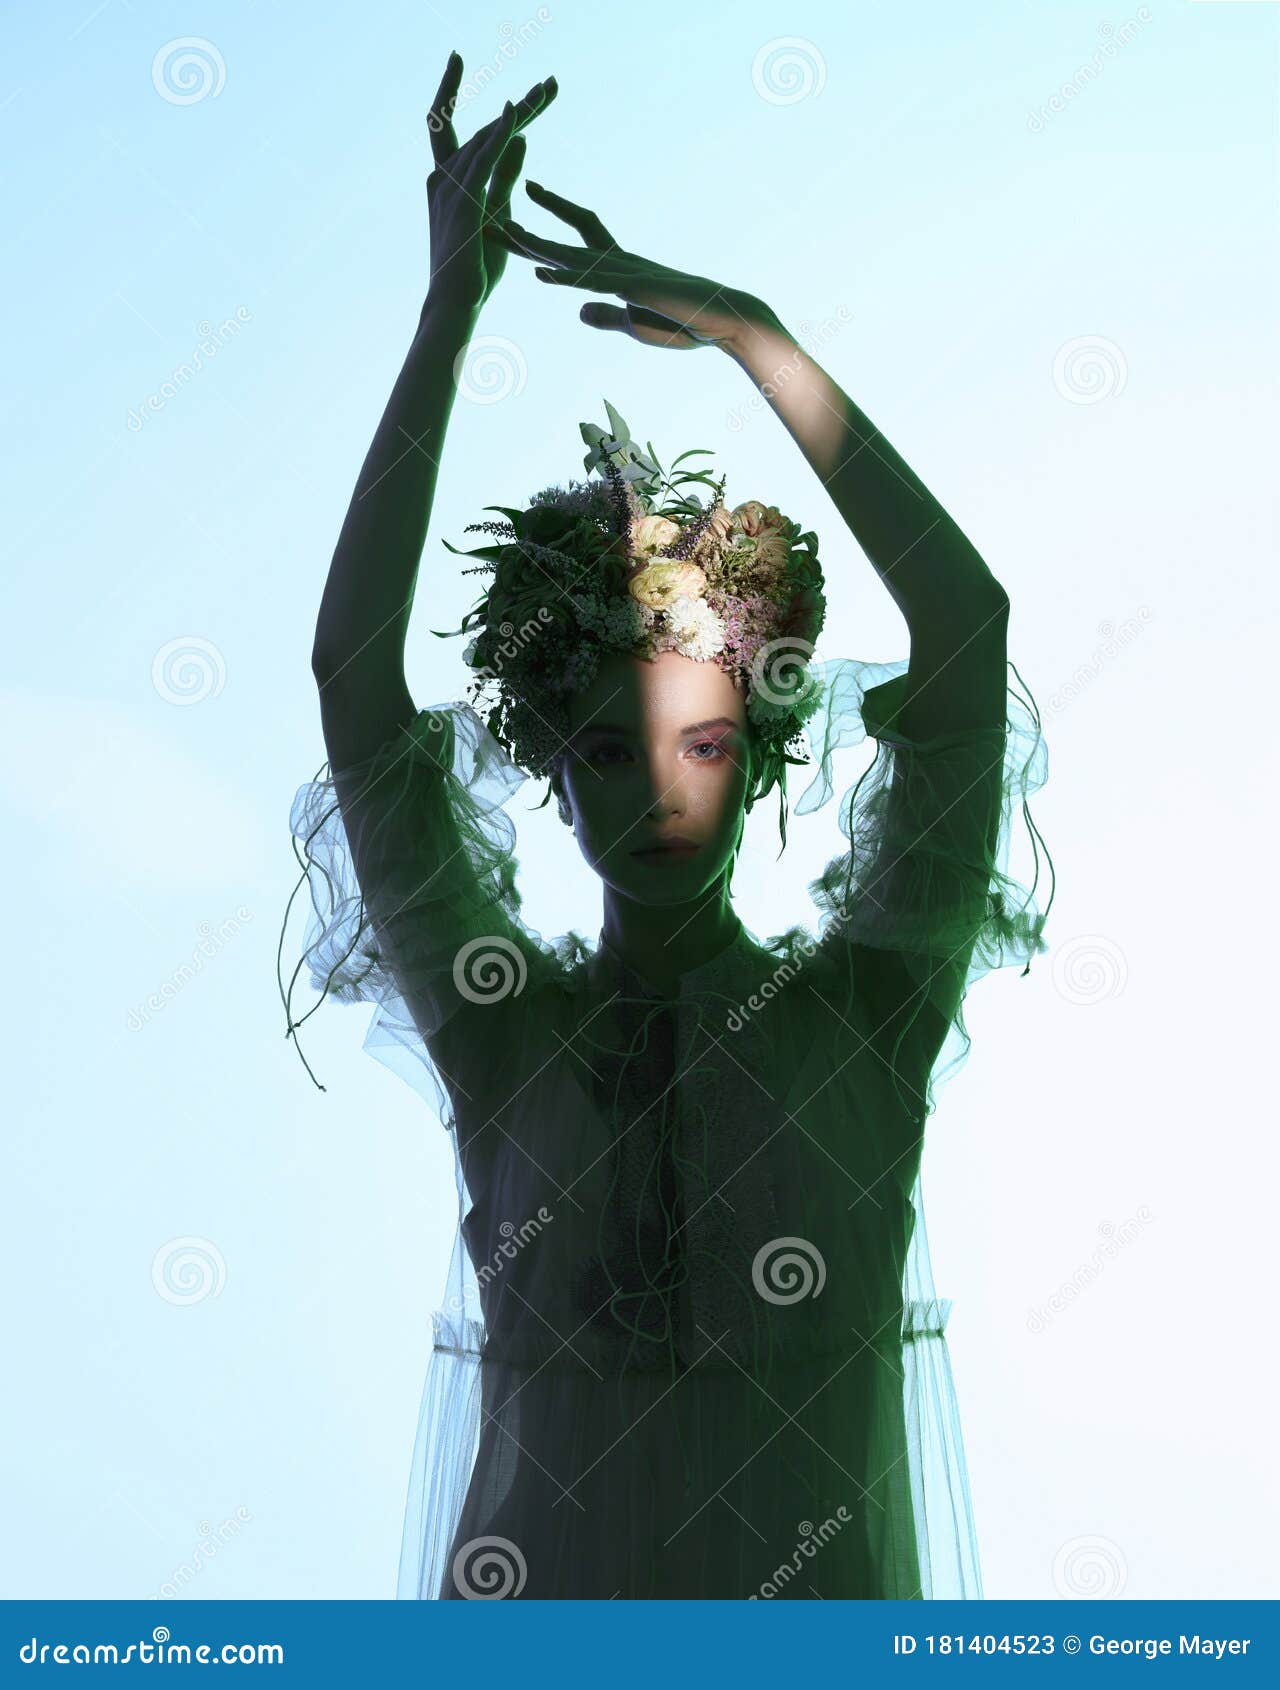 花坛美女的时装艺术照库存图片 图片包括有关心 神仙 查找 魅力 纵向 设计 花卉 王冠